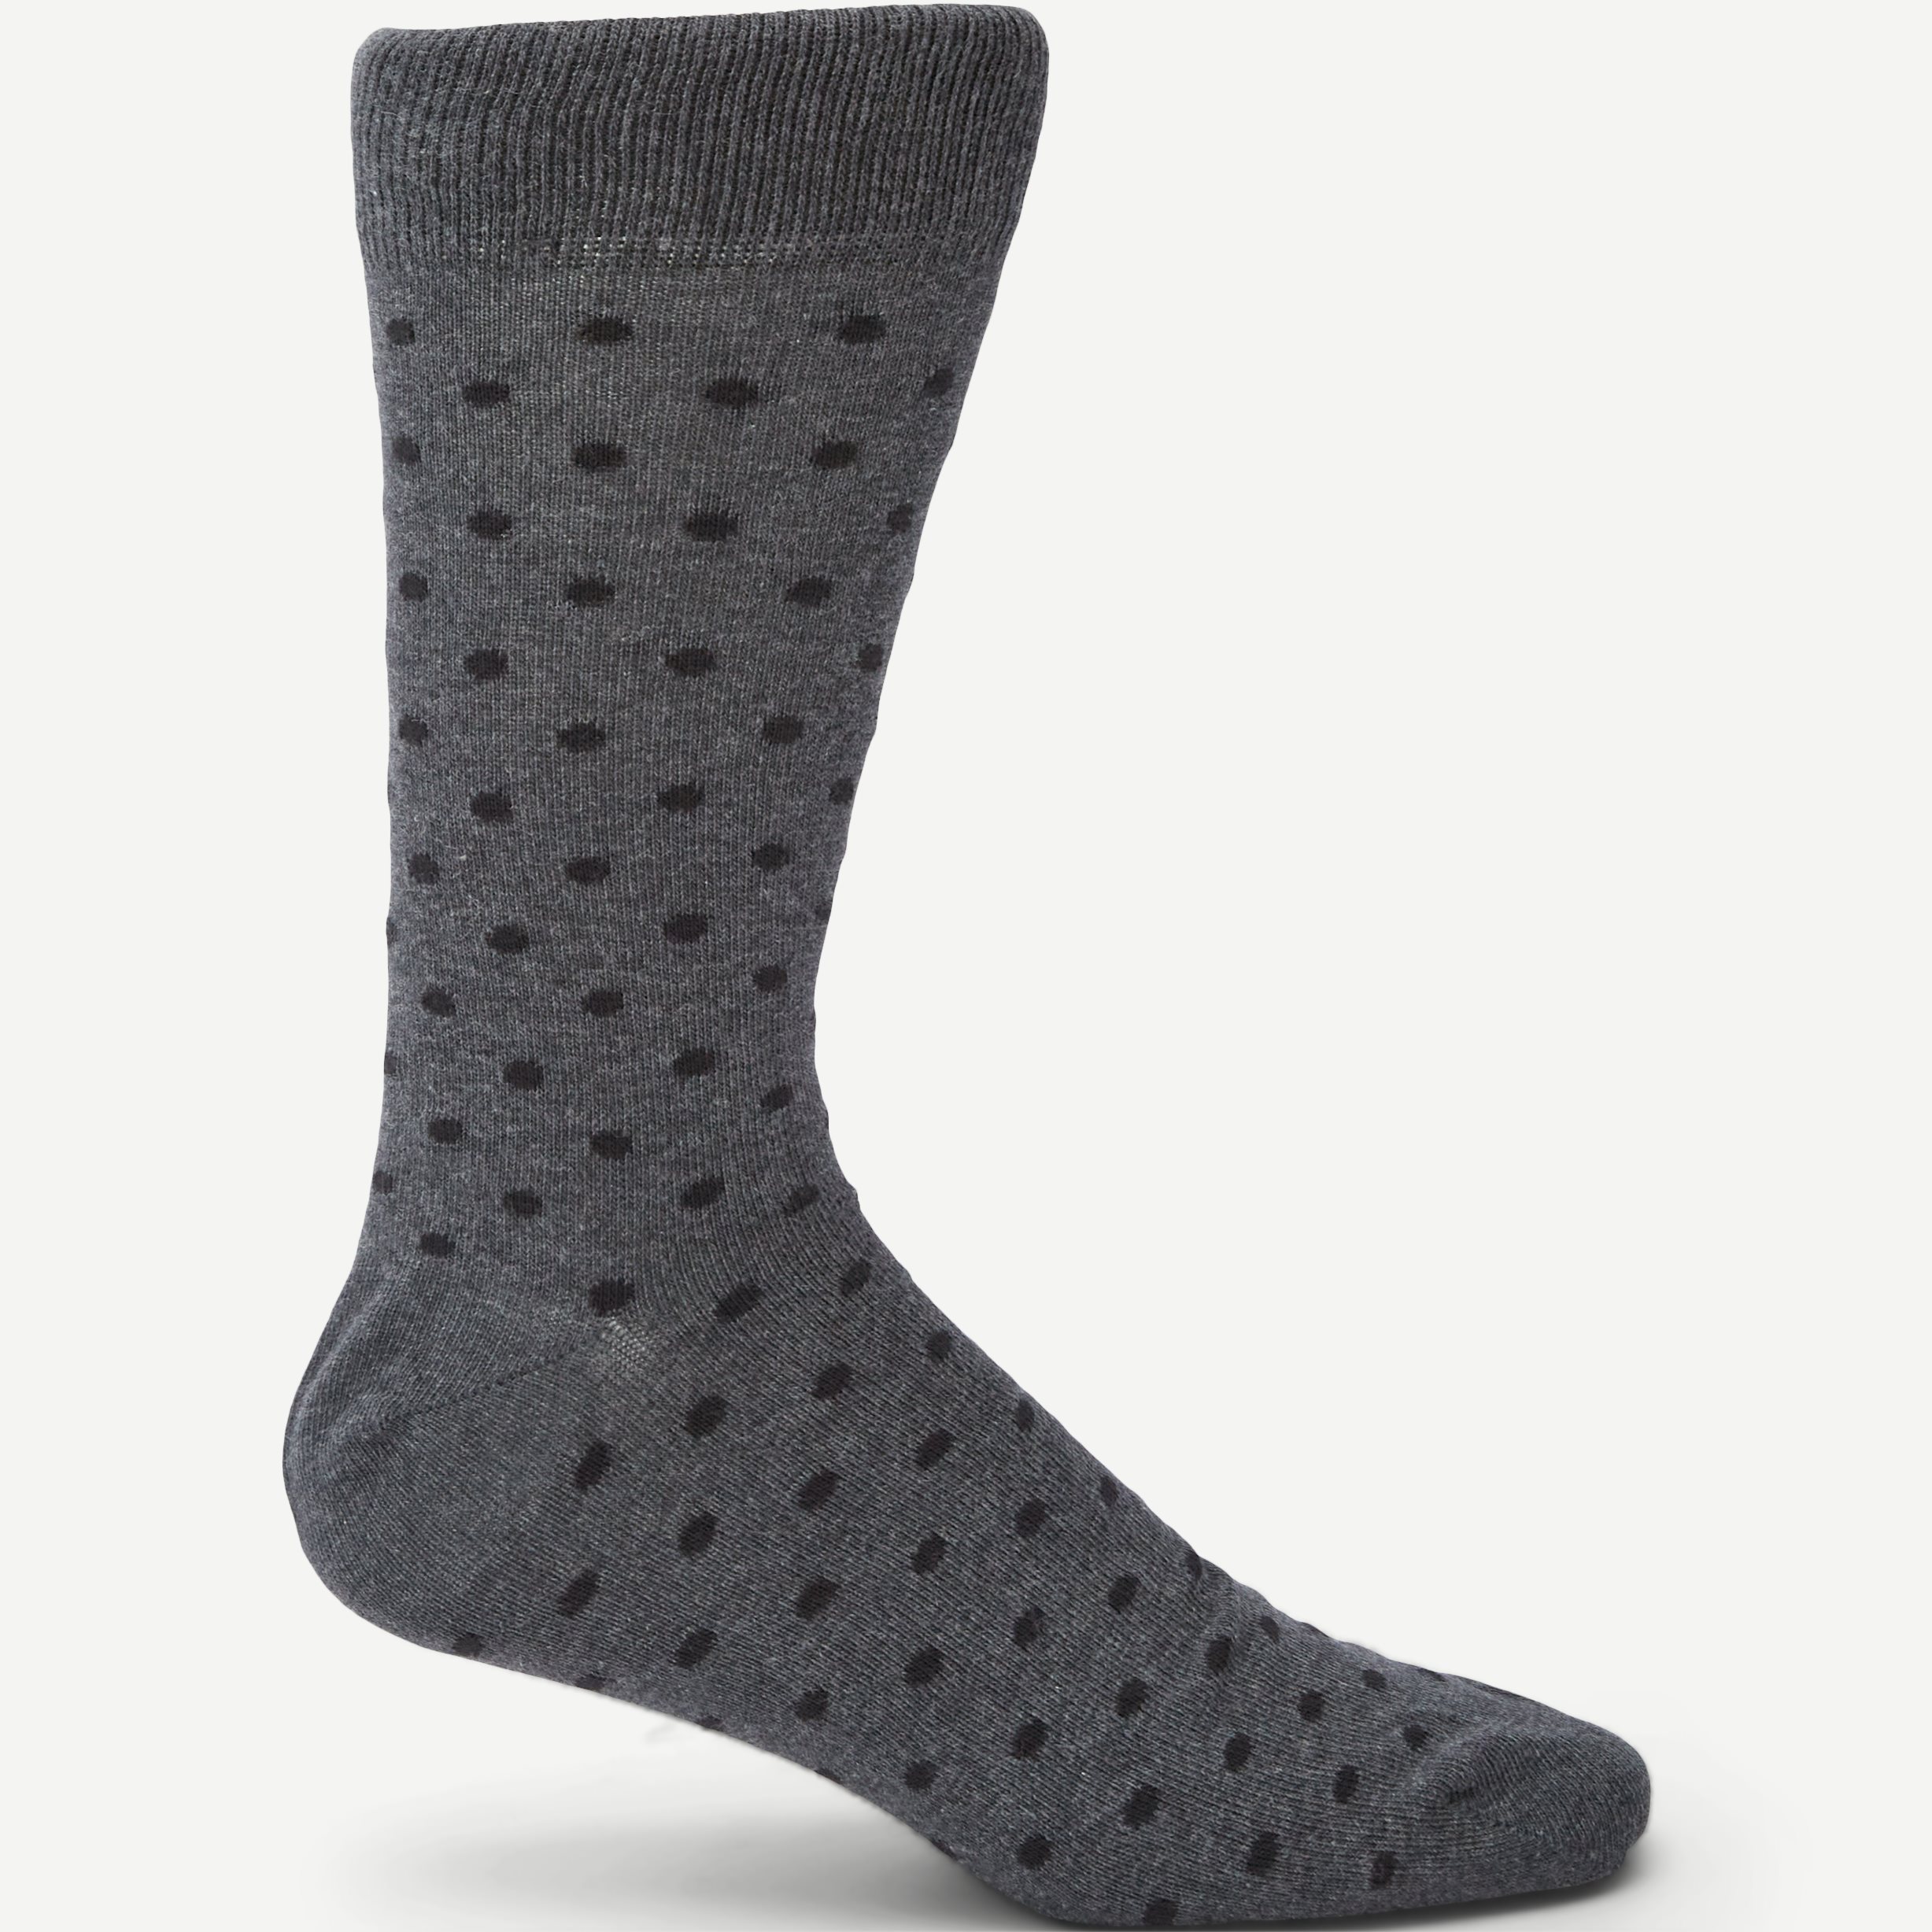 Pablo Soccer - Socks - Grey